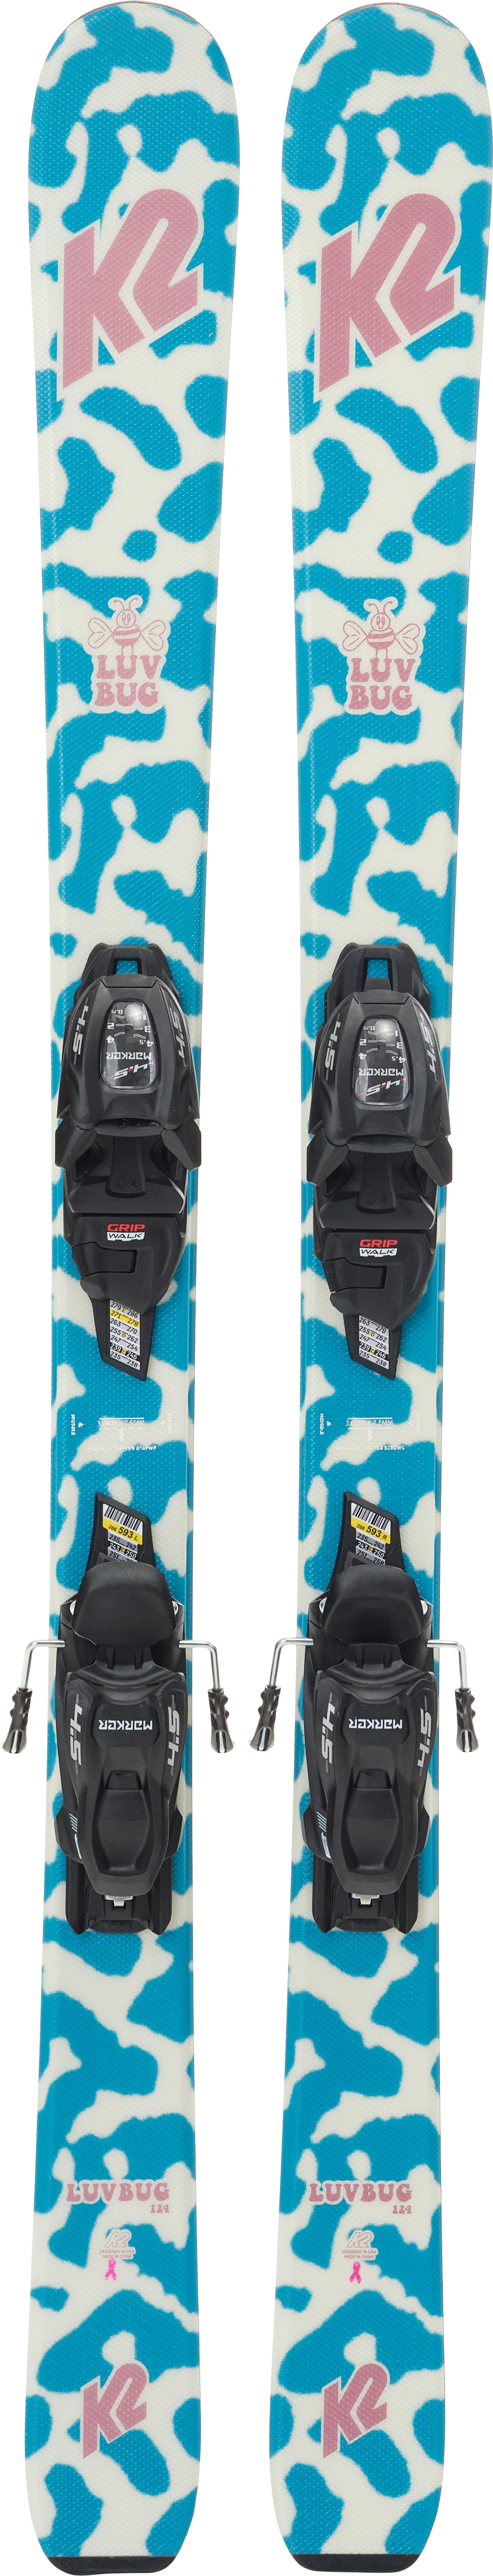 K2 Luv Bug Fdt 4.5 Skier inkl. Bindungen, 76 cm von K2